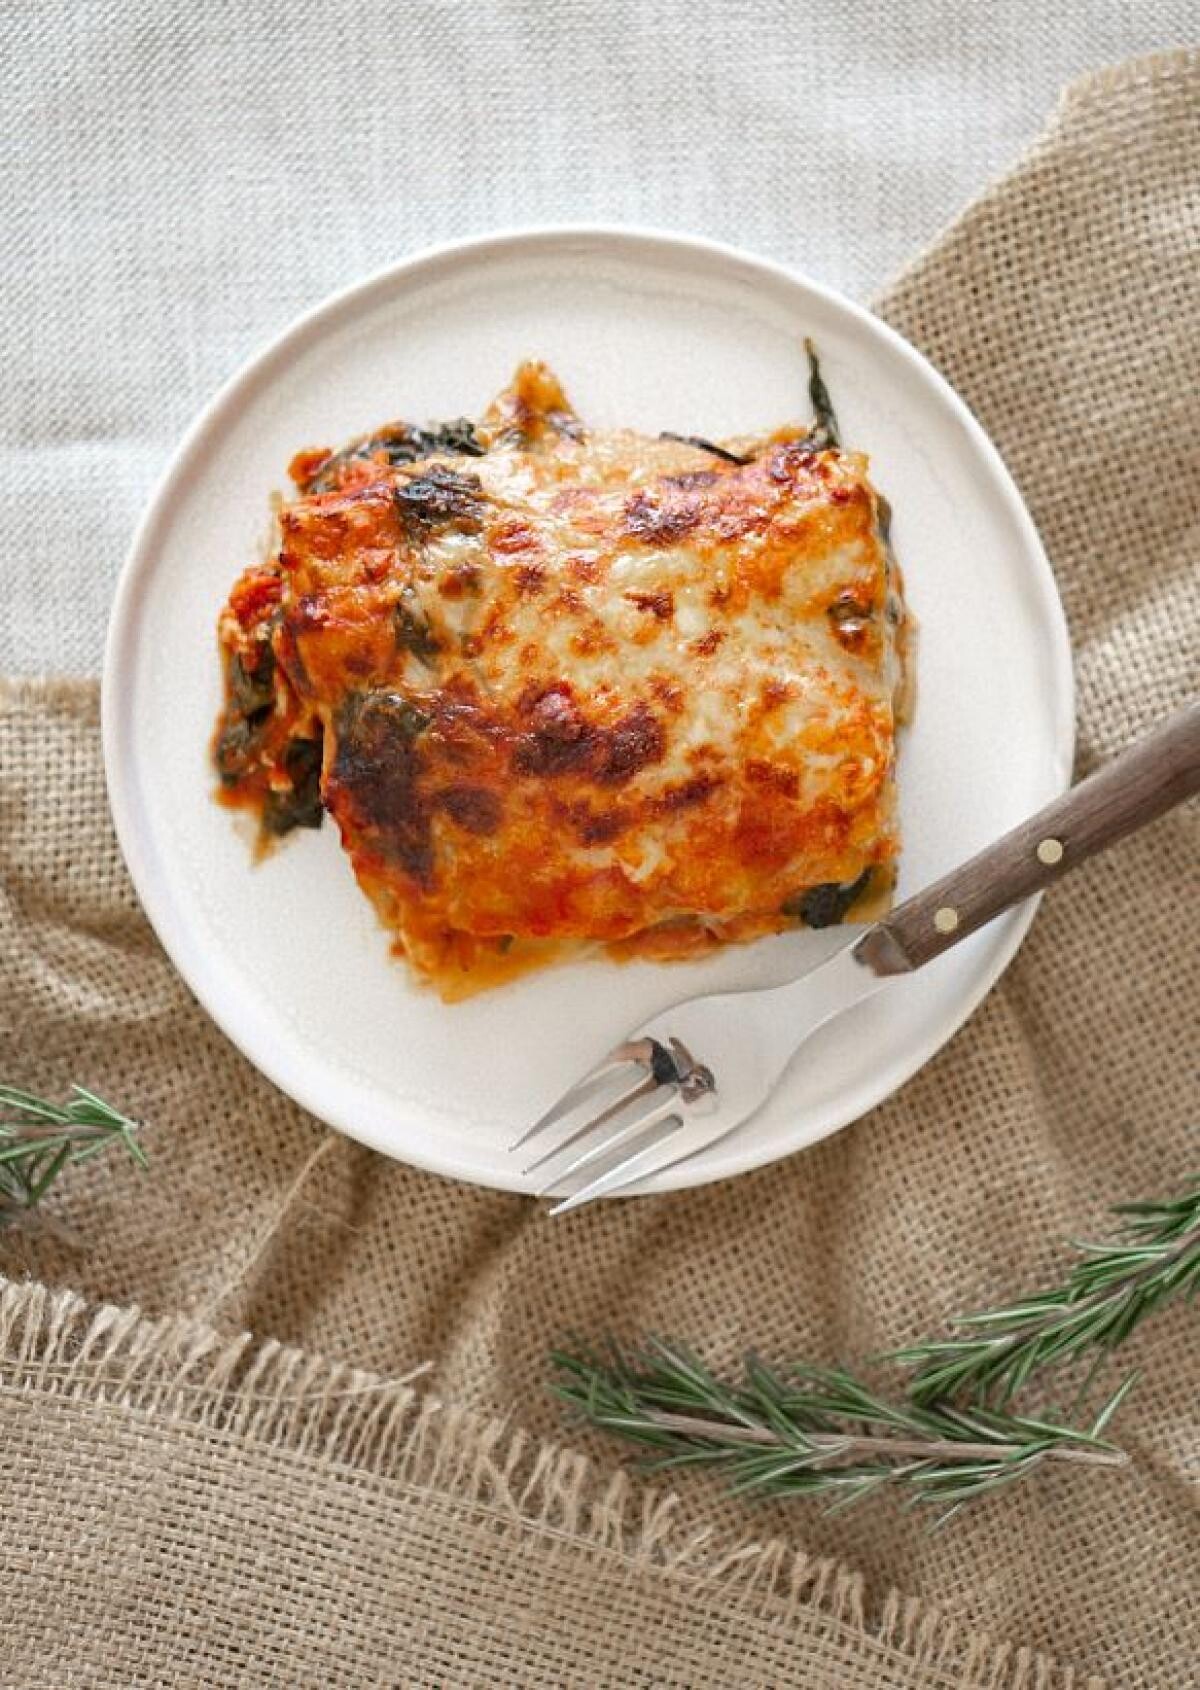 Lasagna pentru leneși, o rețetă pe care chiar și un adolescent o poate prepara. Sursa - Pexels